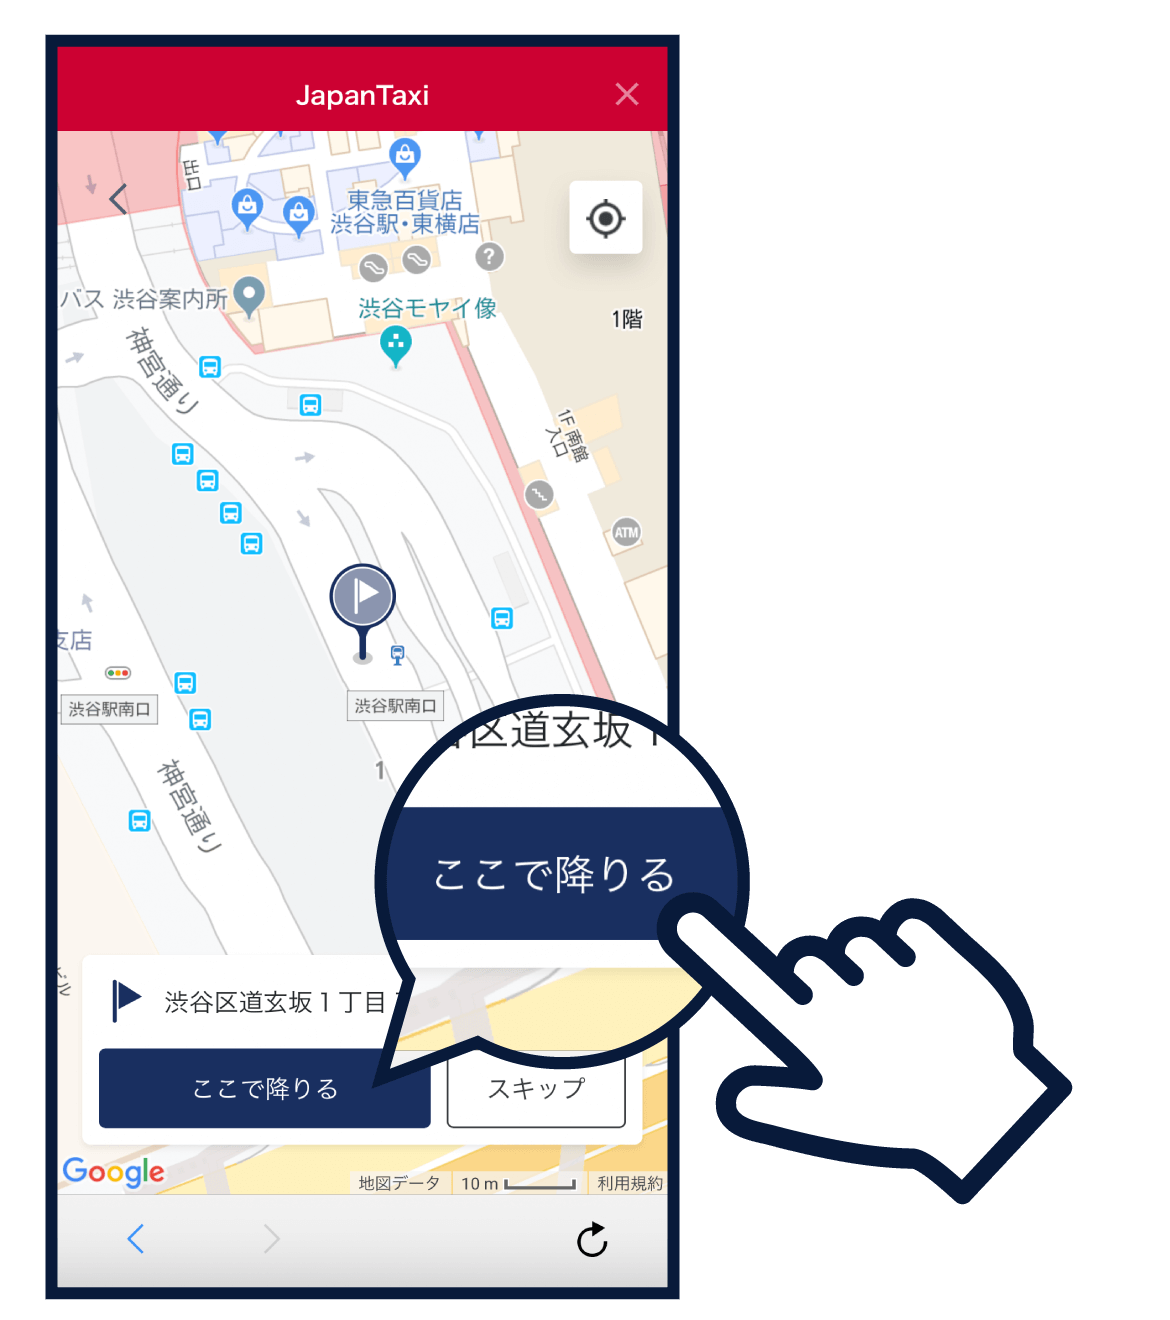 イラスト：d払いアプリ内のJapanTaxi画面で住所を入力後「ここで降りる」をタップしようとしているところ